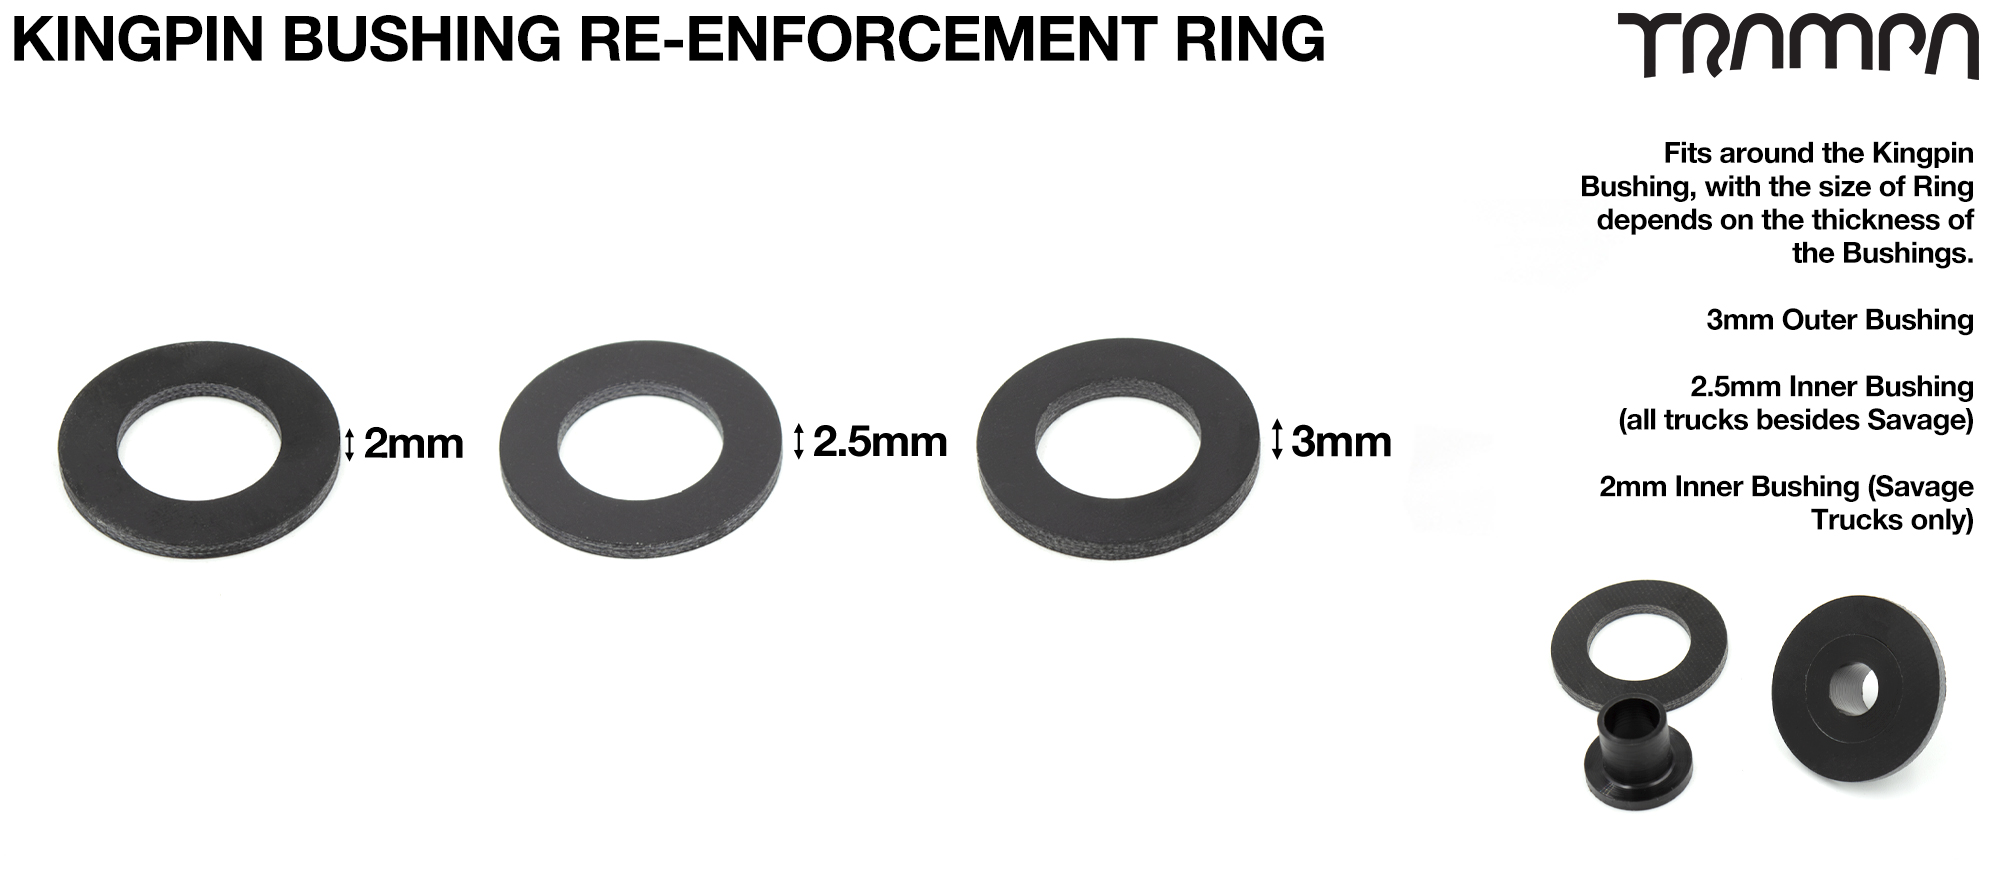 Kingpin Bushing Re-enforcement Ring - Custom